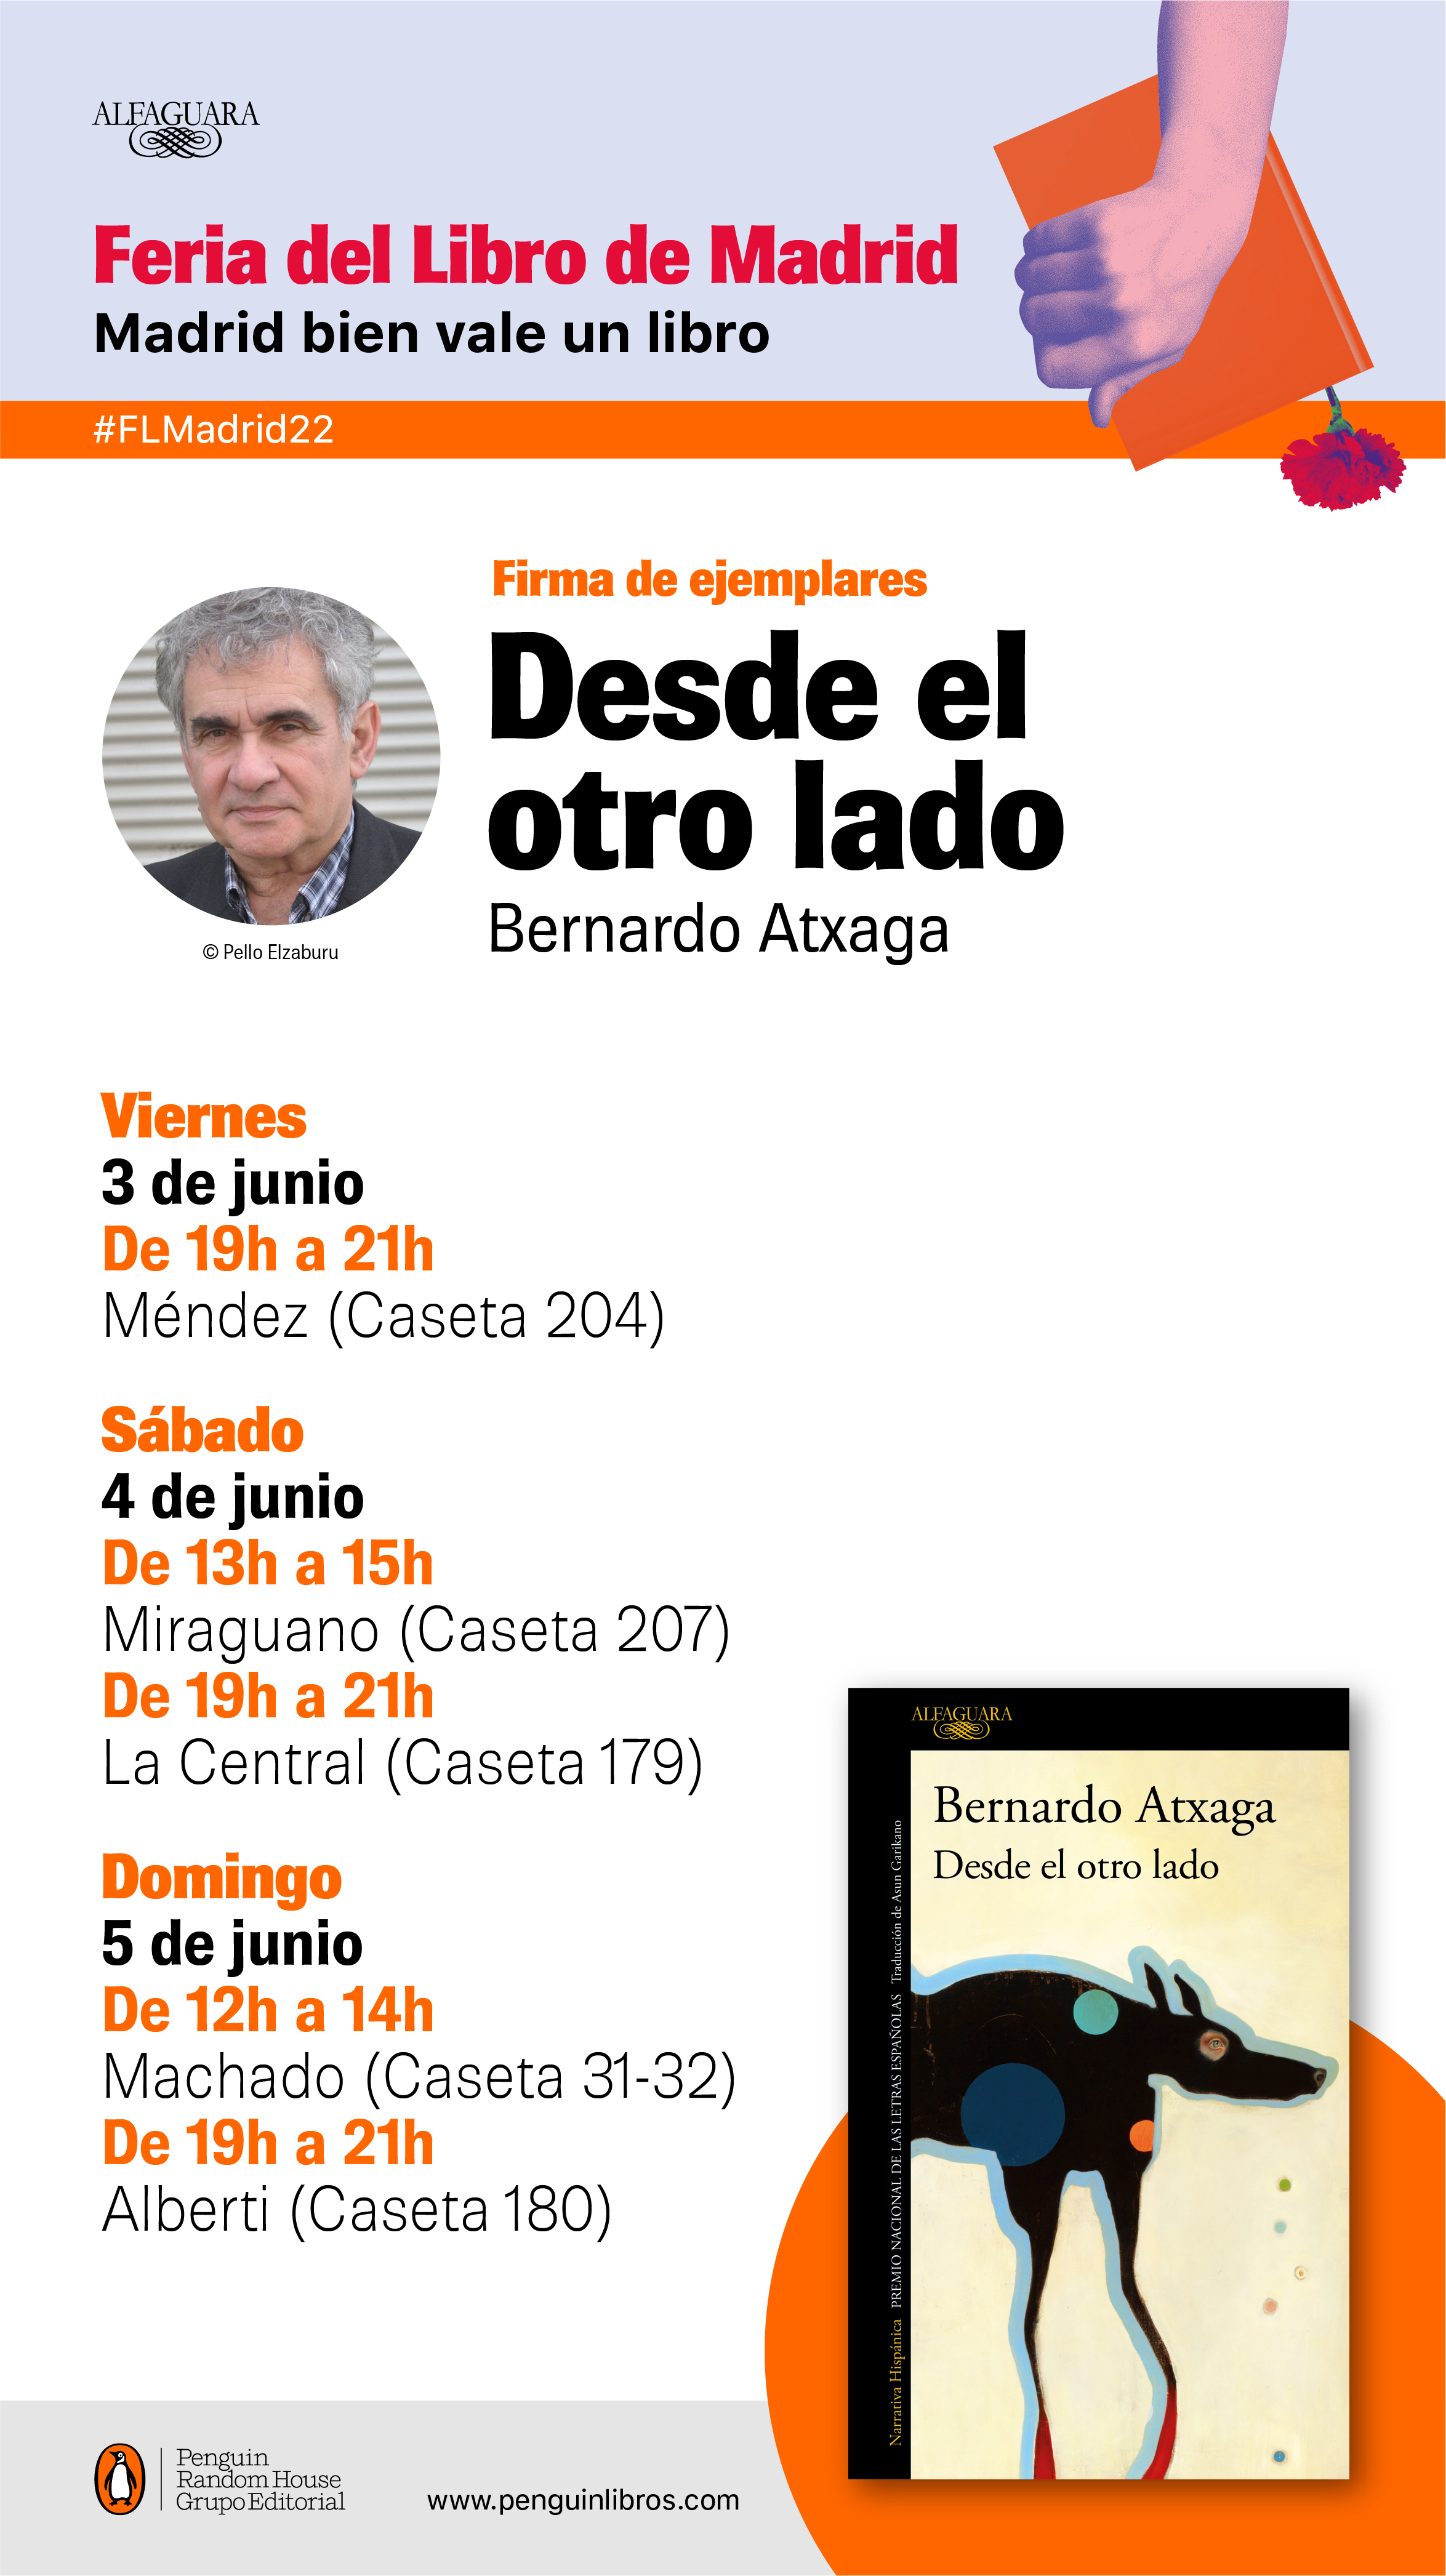 Bernardo Atxaga firmará ejemplares en la Feria del Libro de Madrid